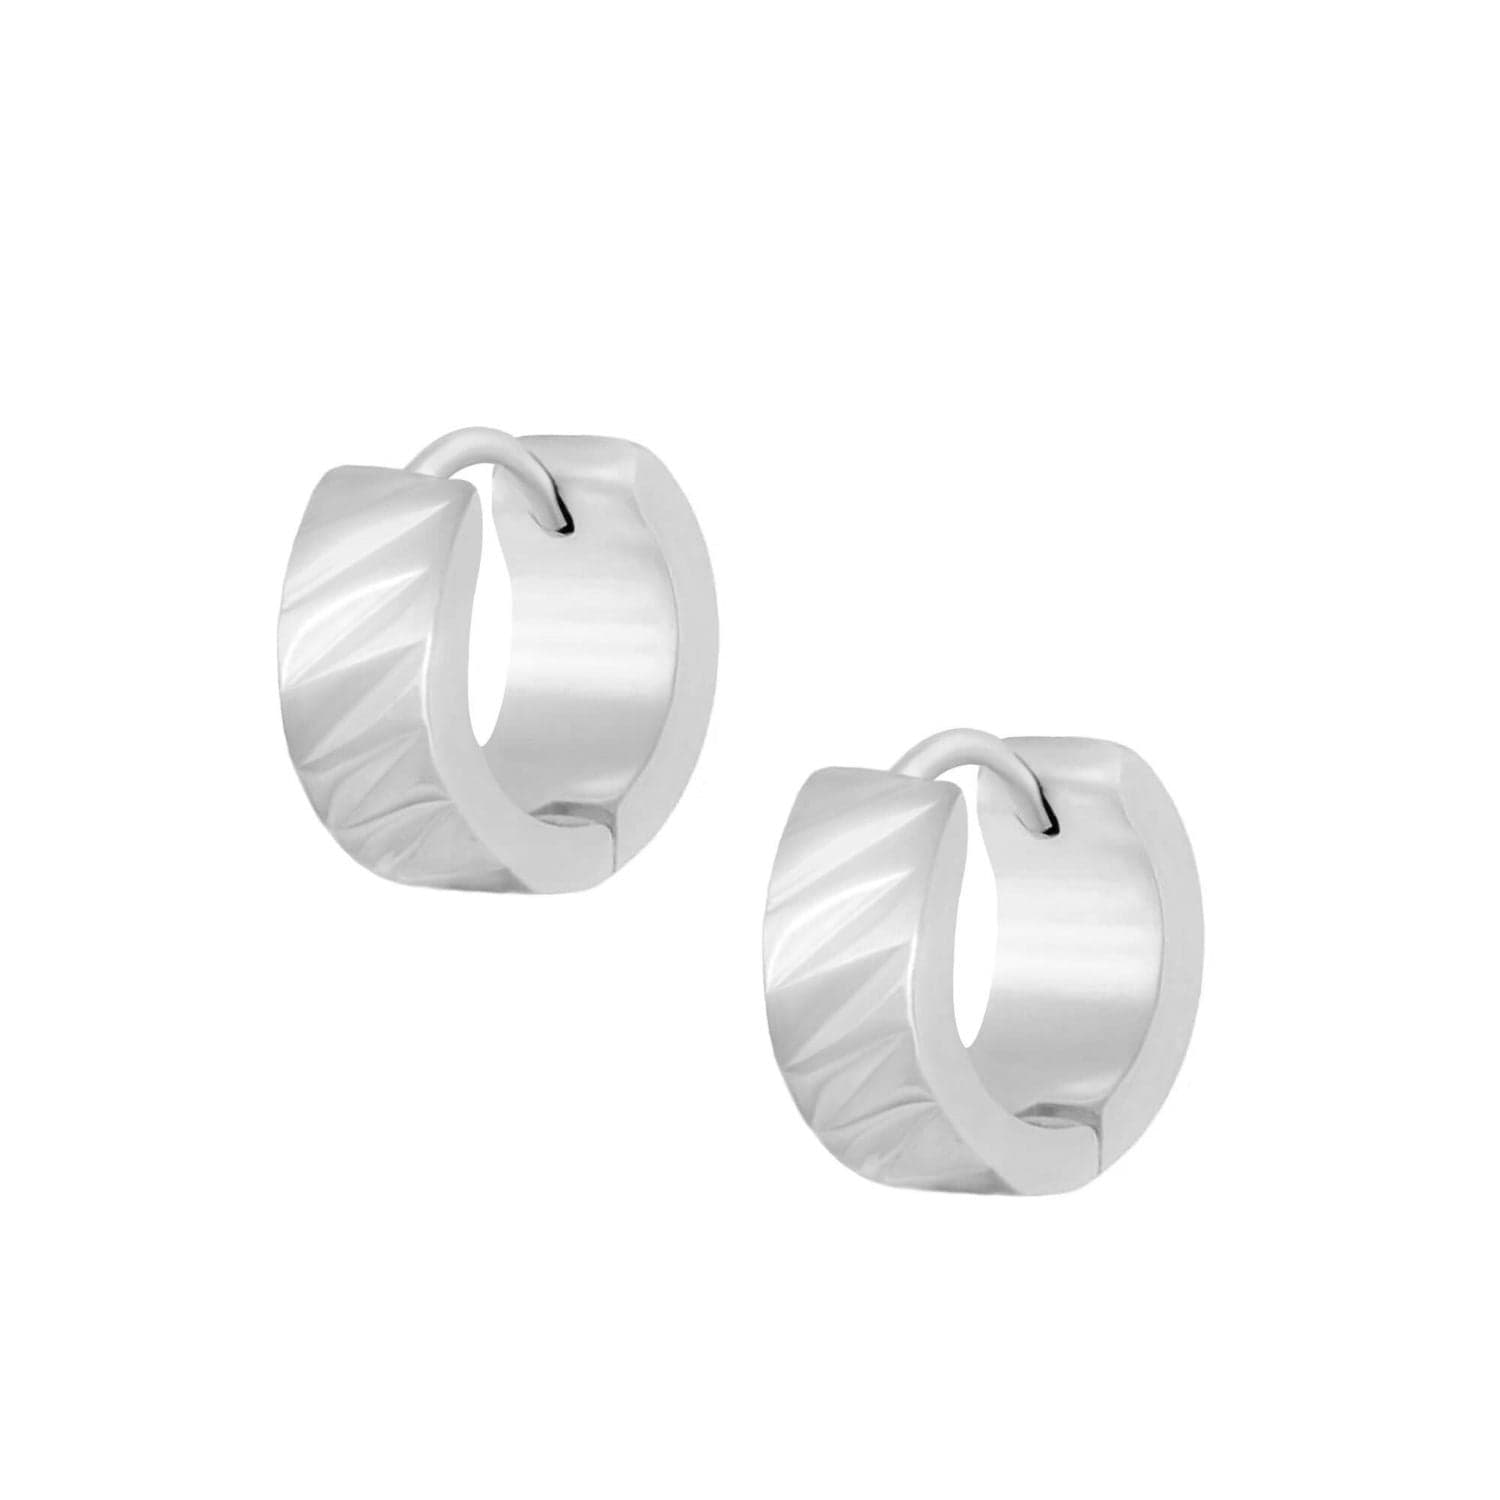 BohoMoon Stainless Steel Berlin Hoop Earrings Silver / Small